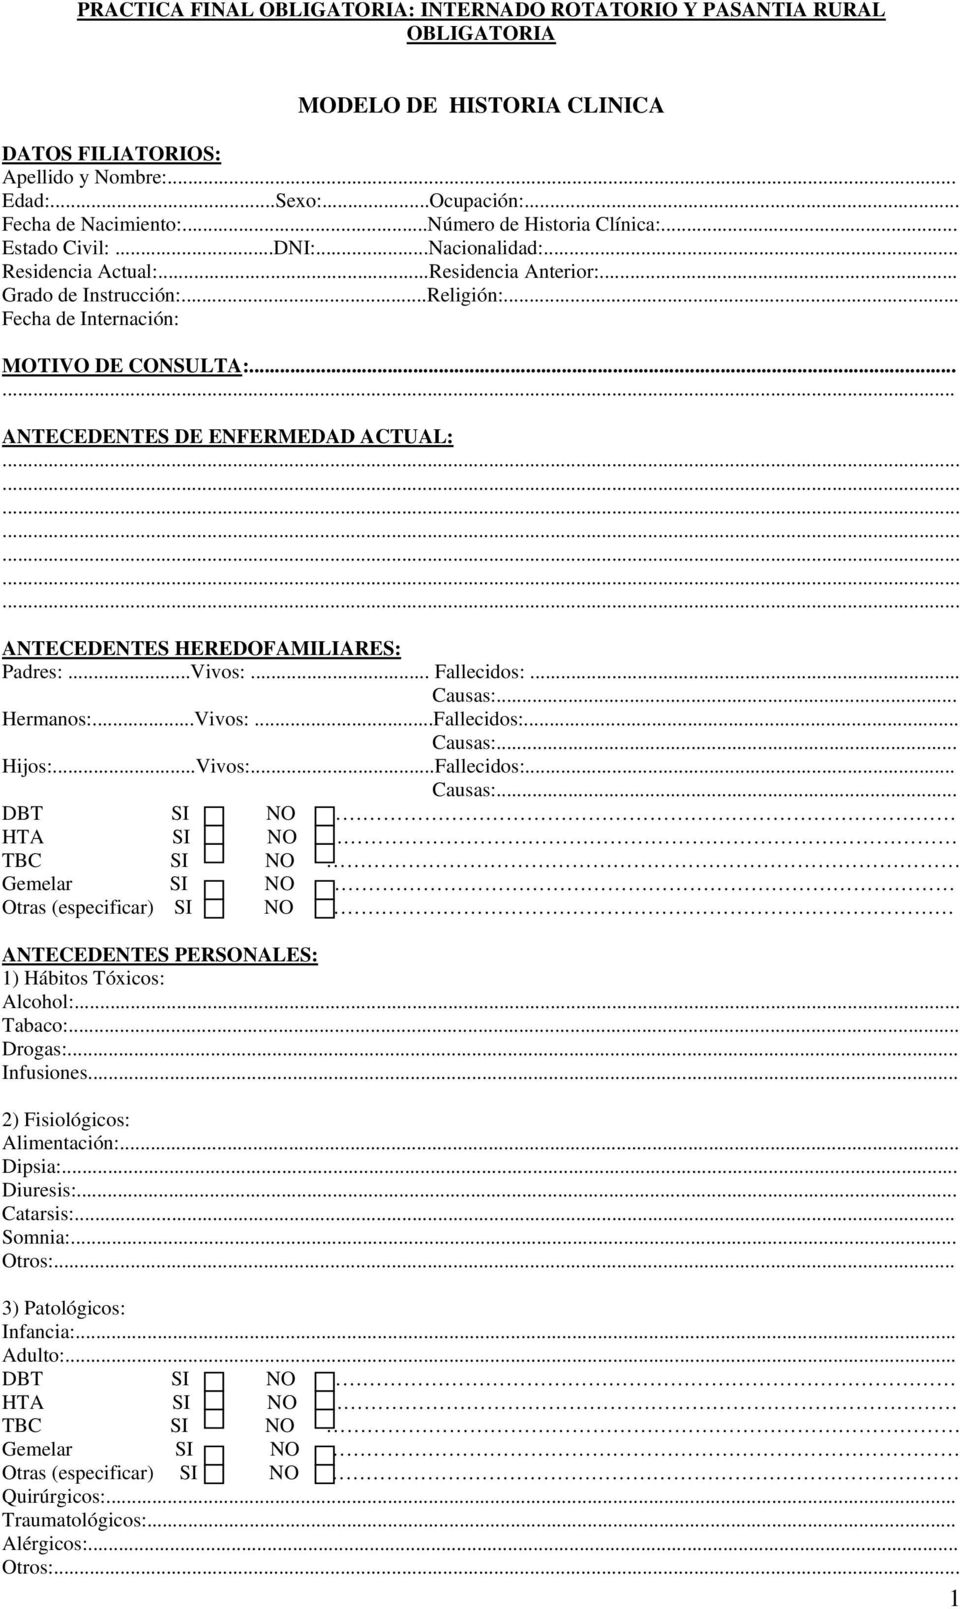 MODELO DE HISTORIA CLINICA - PDF Free Download